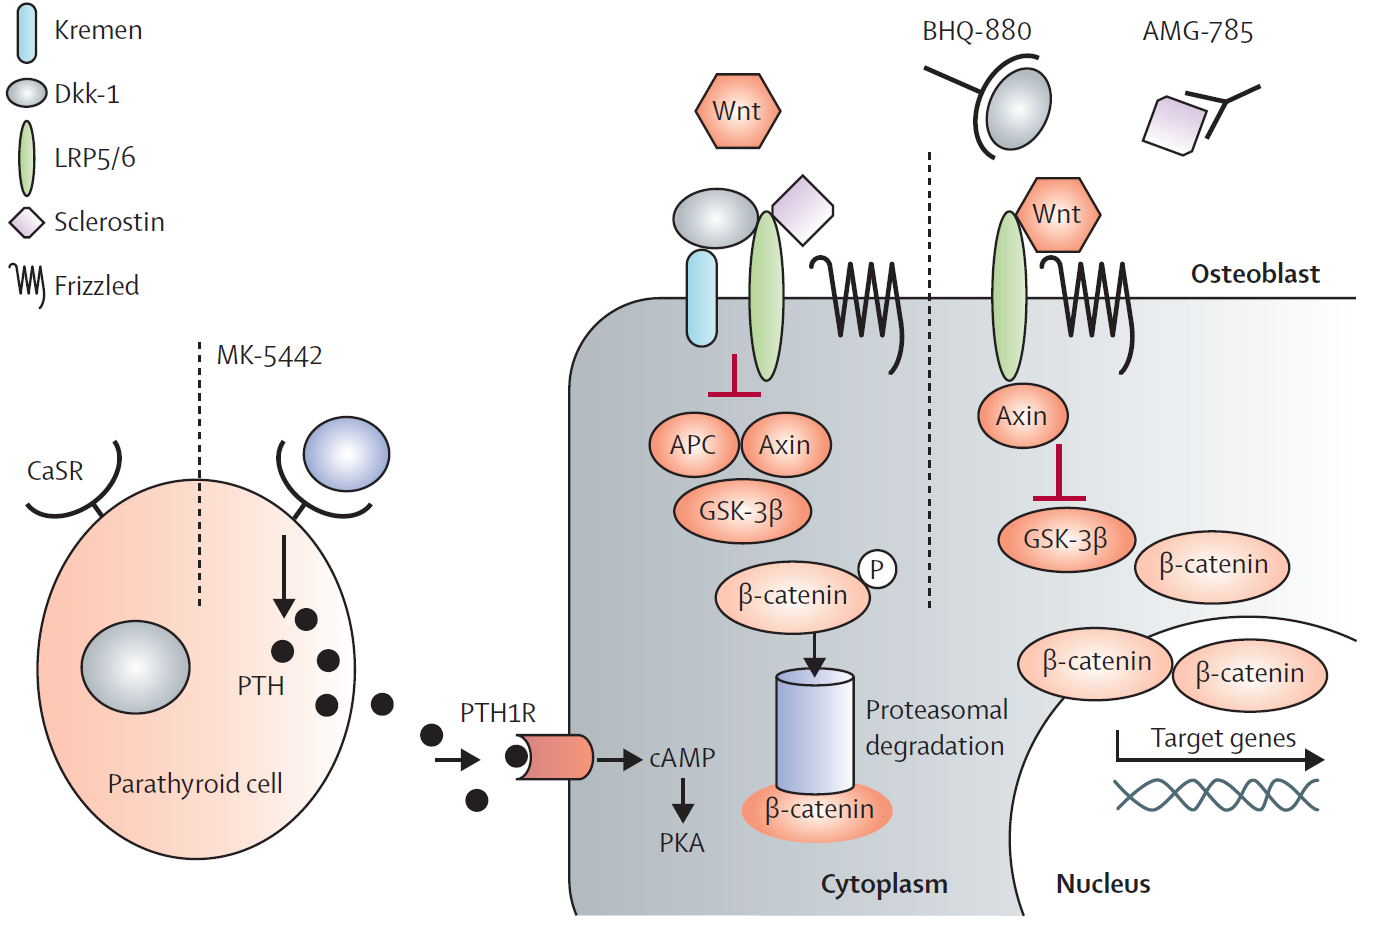 IL SISTEMA WNT/β-CATENINA Rachner TD et al, Lancet 2011 Quando WNT si lega al suo recettore (Frizzled) ed al co-recettore (LRP5/6) inibisce GSK e libera β-catenina non fosforilata che può